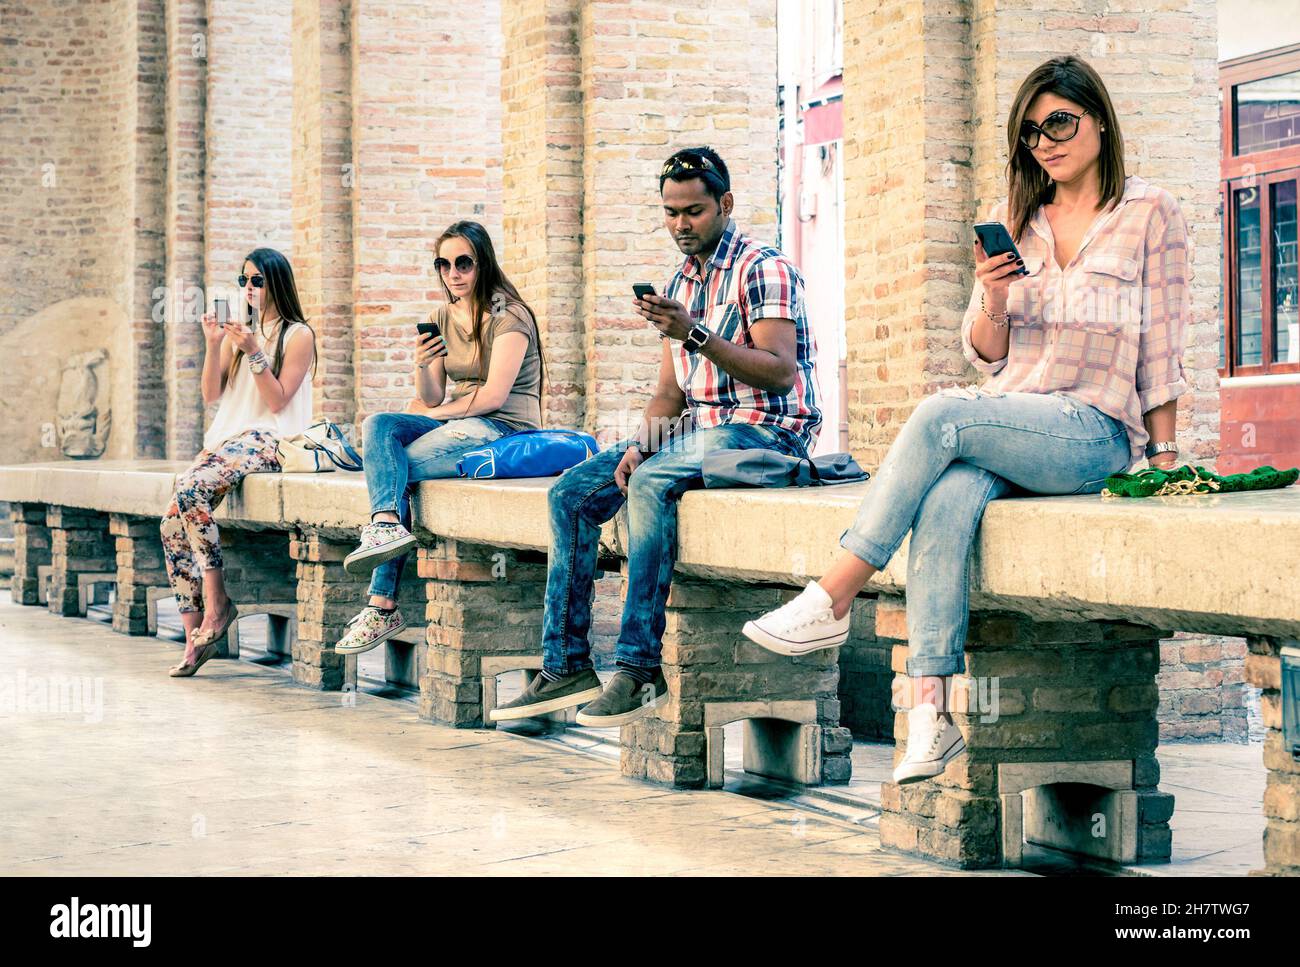 Groupe de jeunes amis multiraciaux utilisant un smartphone avec désintérêt mutuel - dépendance technologique dans le mode de vie réel Banque D'Images